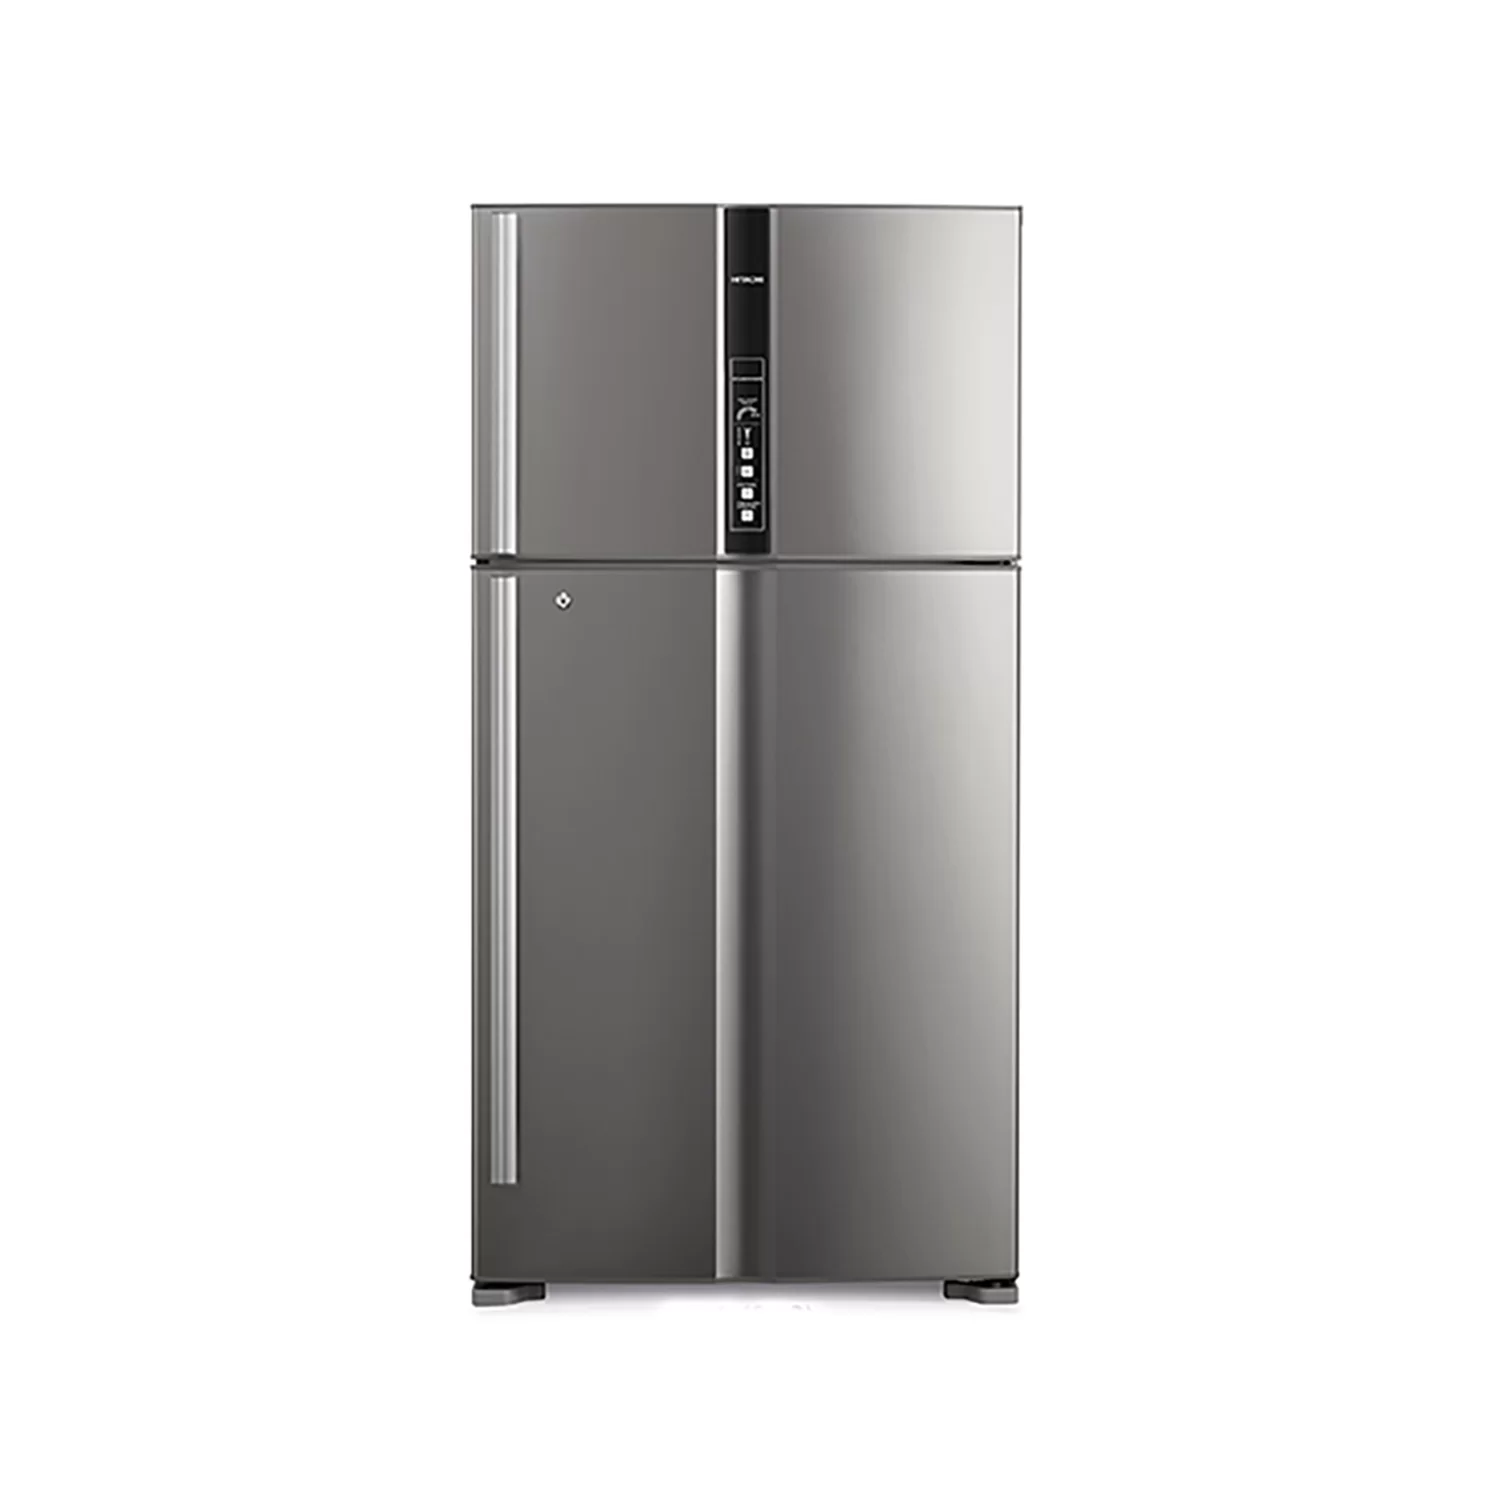 Hitachi Refrigerator 24.73 cu/ft 2Door Silver - (R-V905PS1KV BSL 